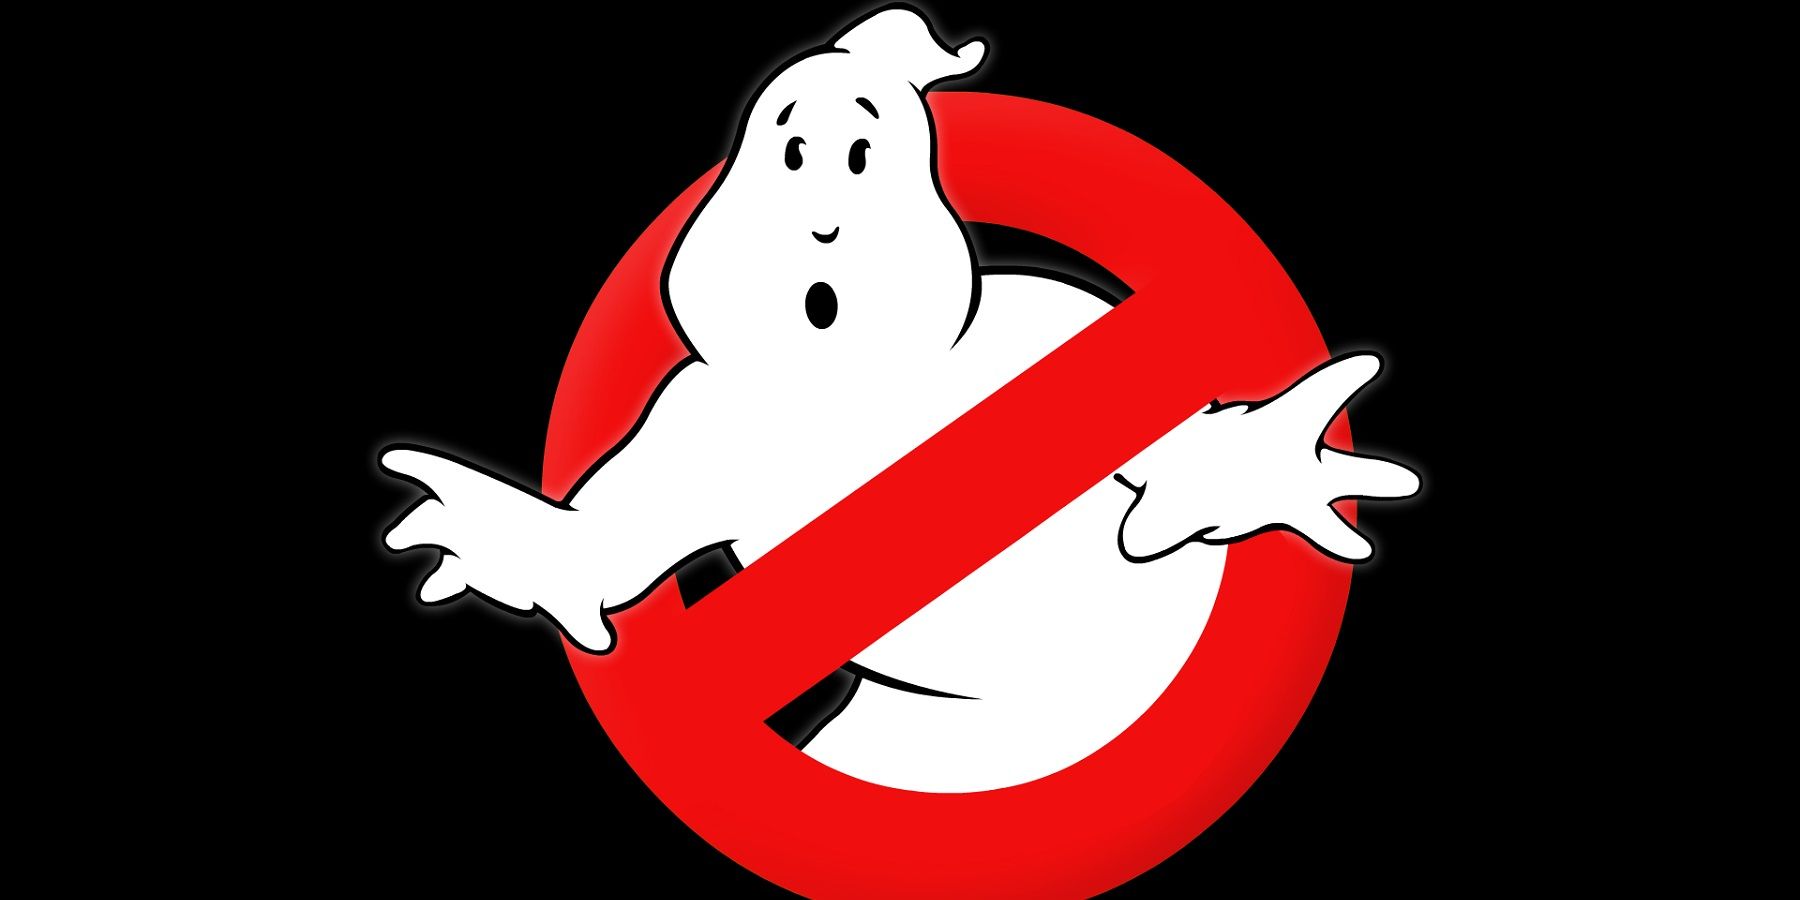 Az új Ghostbusters játék állítólag fejlesztés alatt áll péntek 13-án